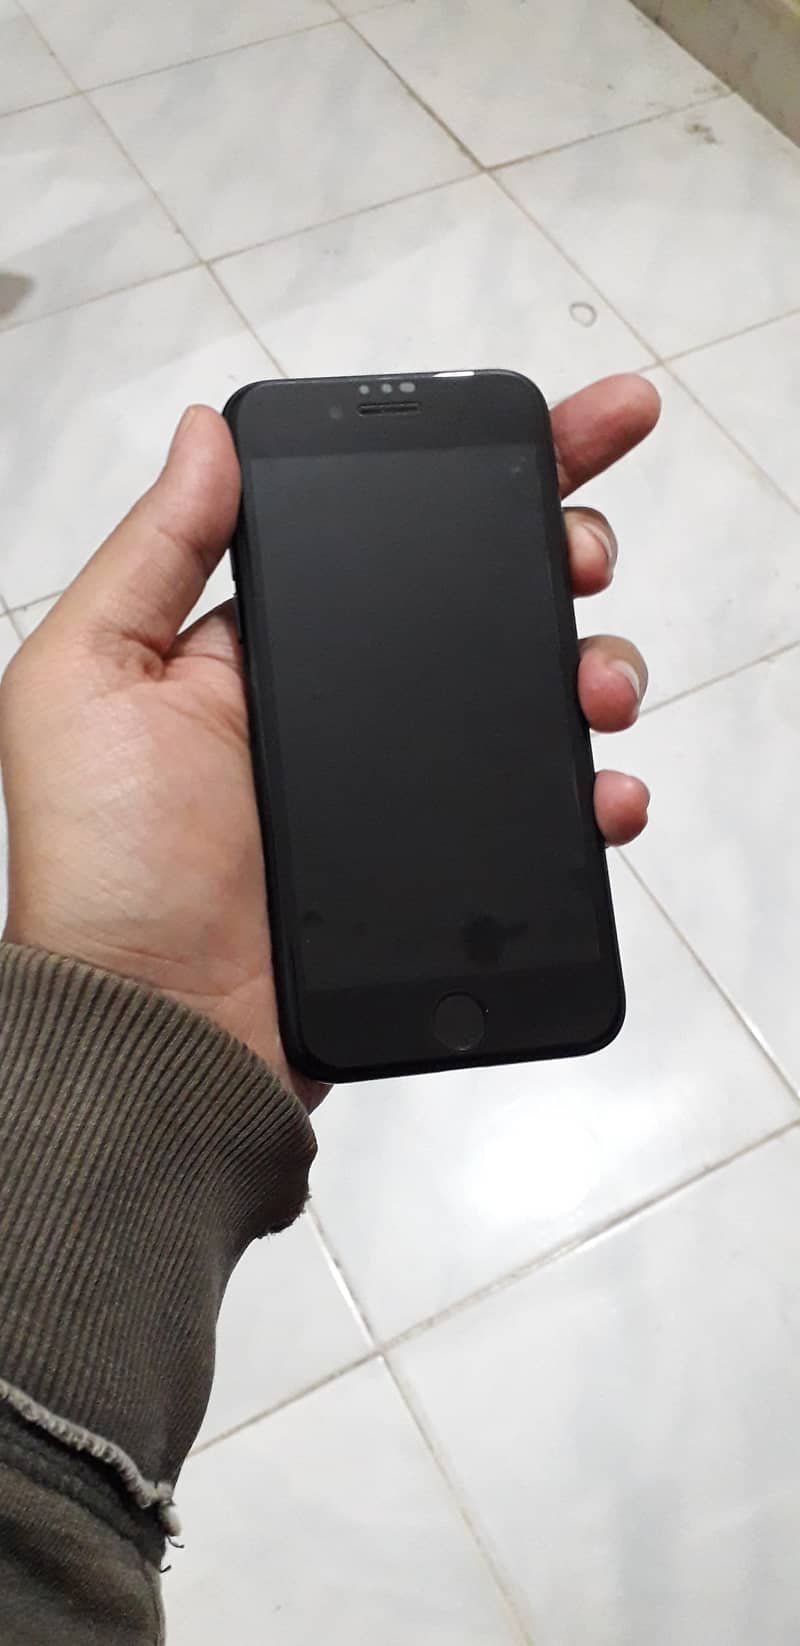 PTA approve Apple iPhone SE 2020 7